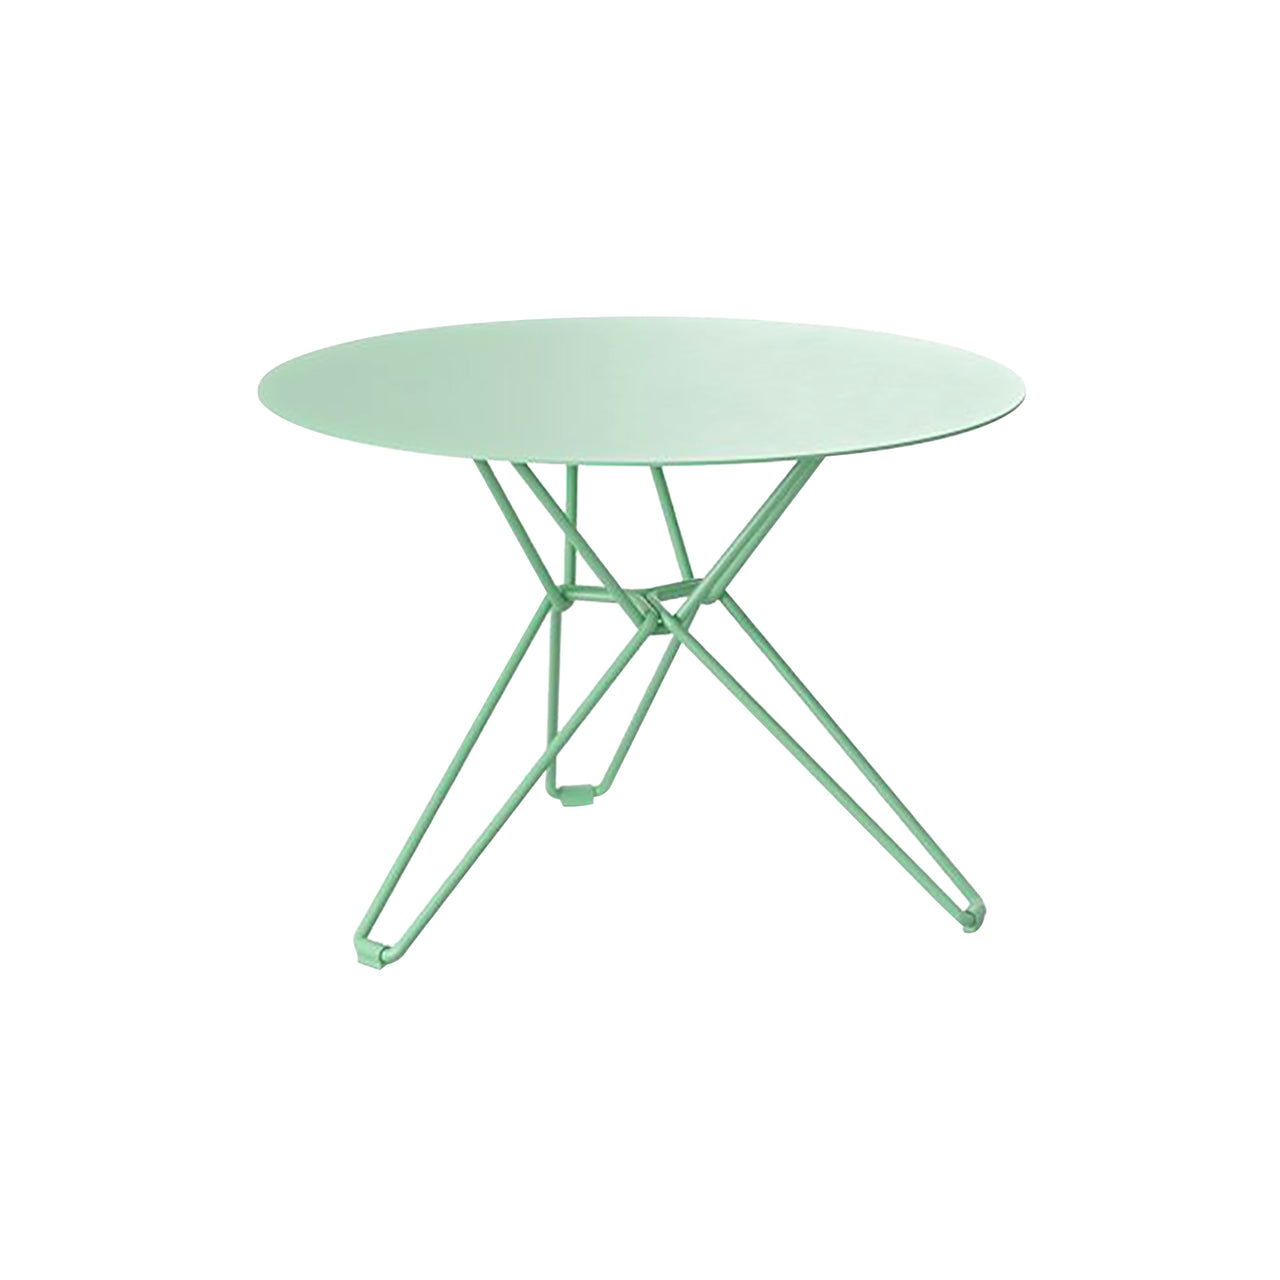 Tio Side Table: Oilcloth Green